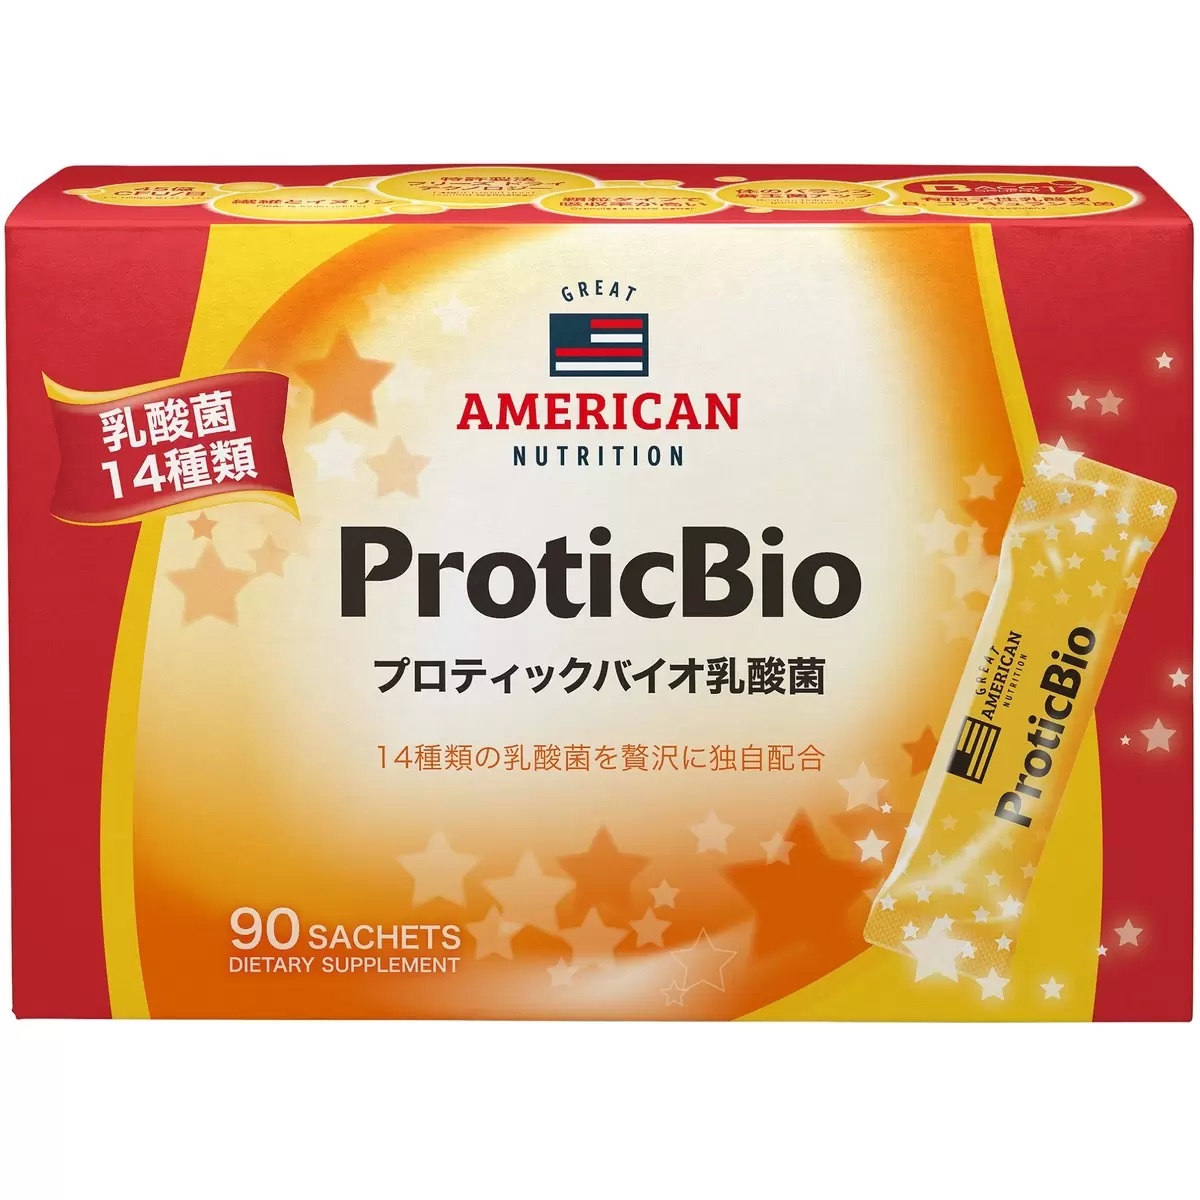 プロティックバイオ 乳酸菌 GREAT AMERICAN NUTRITION 14種類の乳酸菌と独自の乳酸菌BACO17が腸内フローラを整る by:超一流ショップ